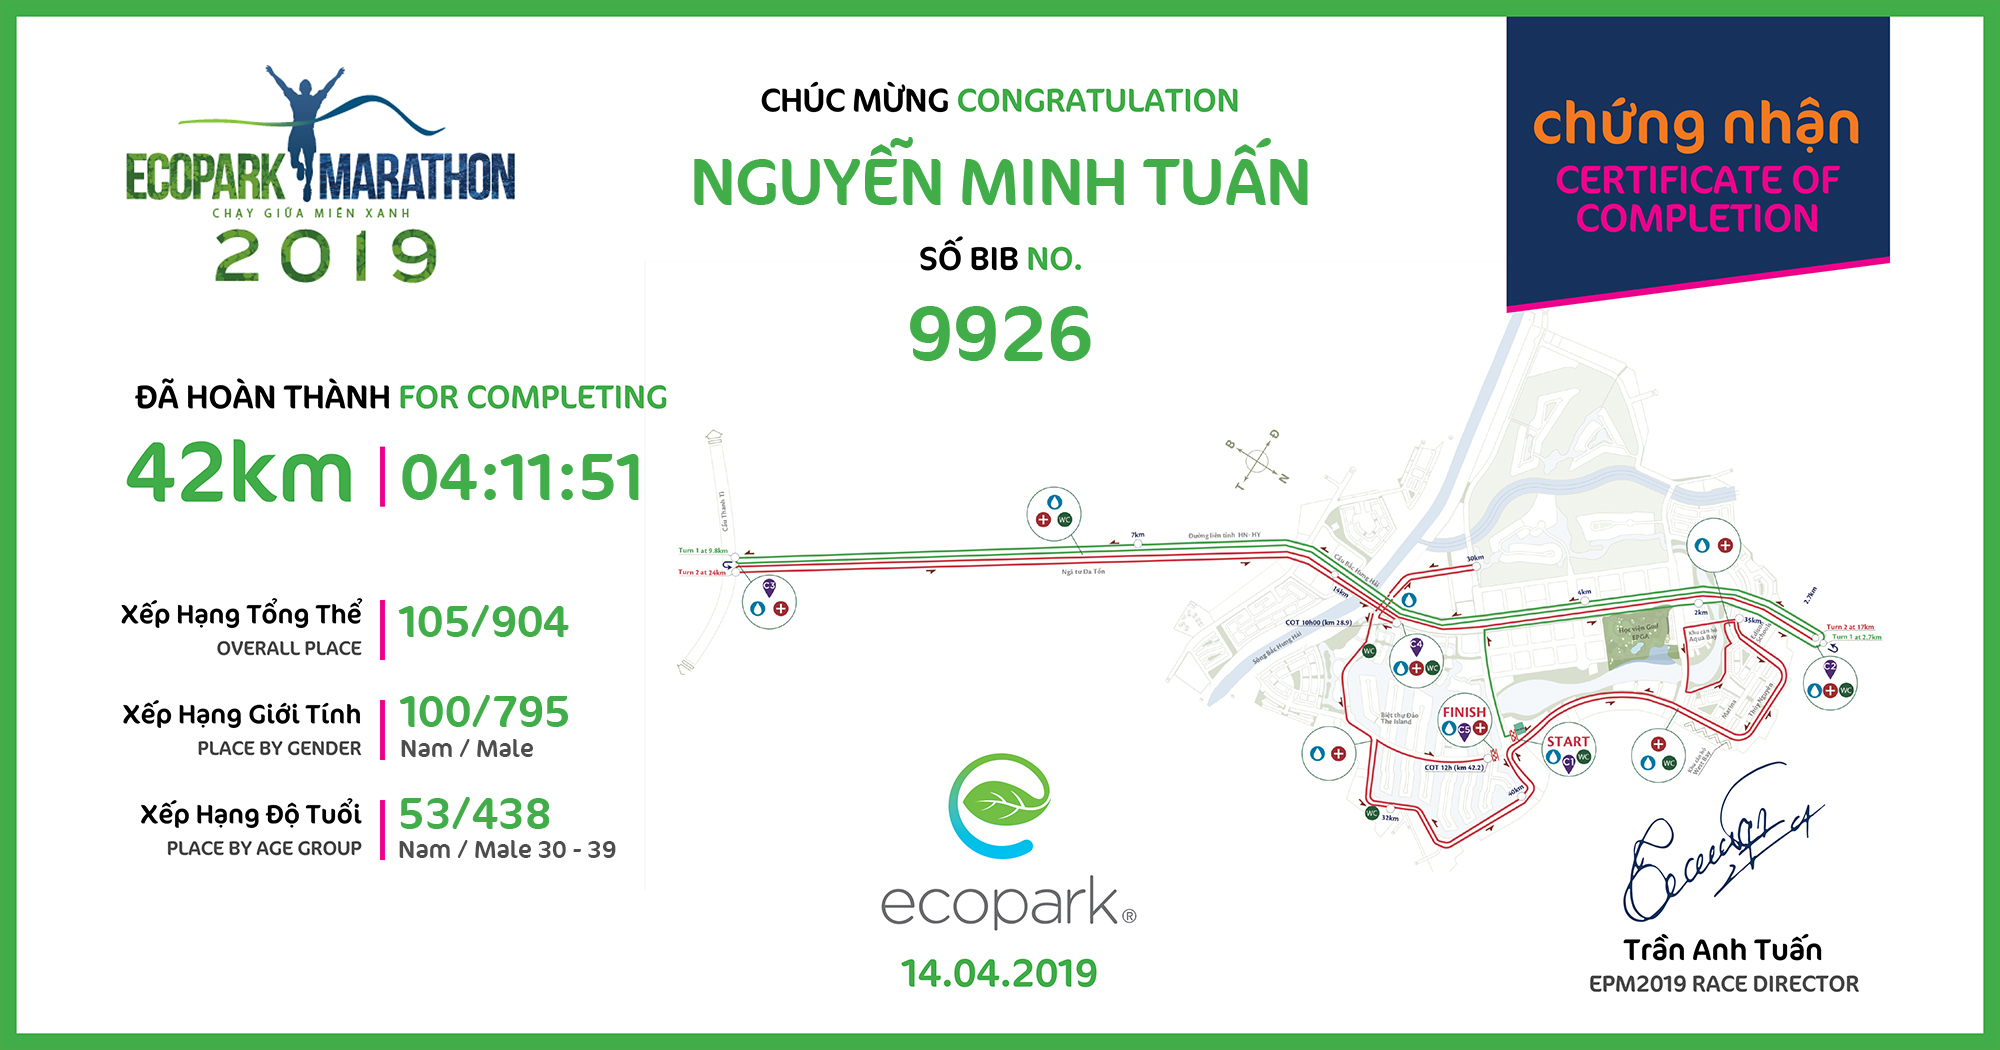 9926 - Nguyễn Minh Tuấn